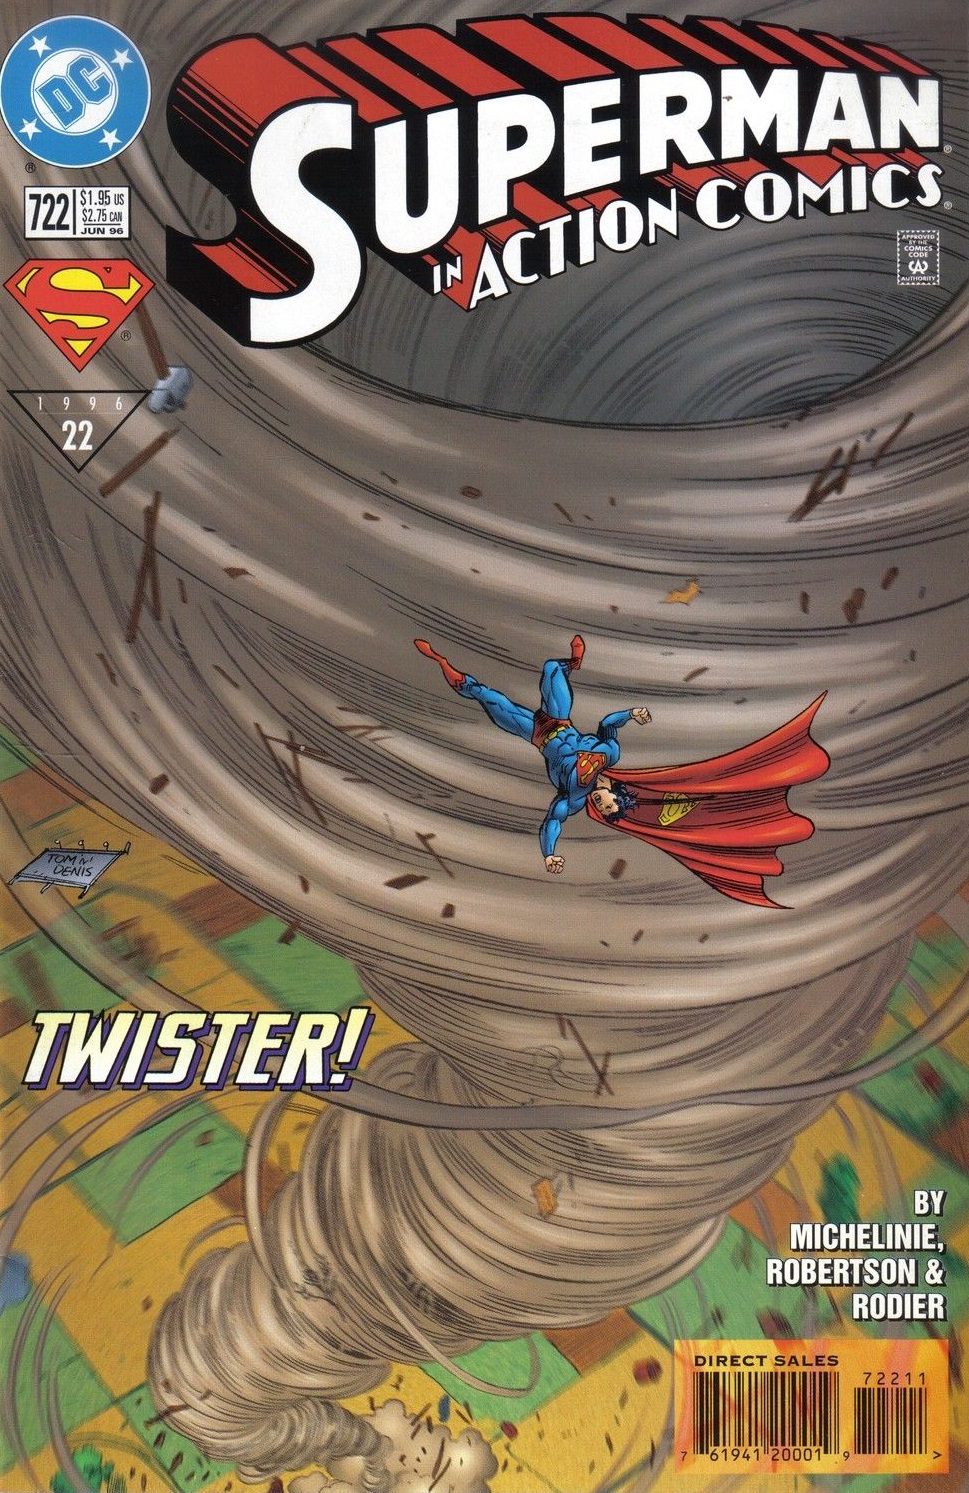 Action Comics Vol. 1 #722